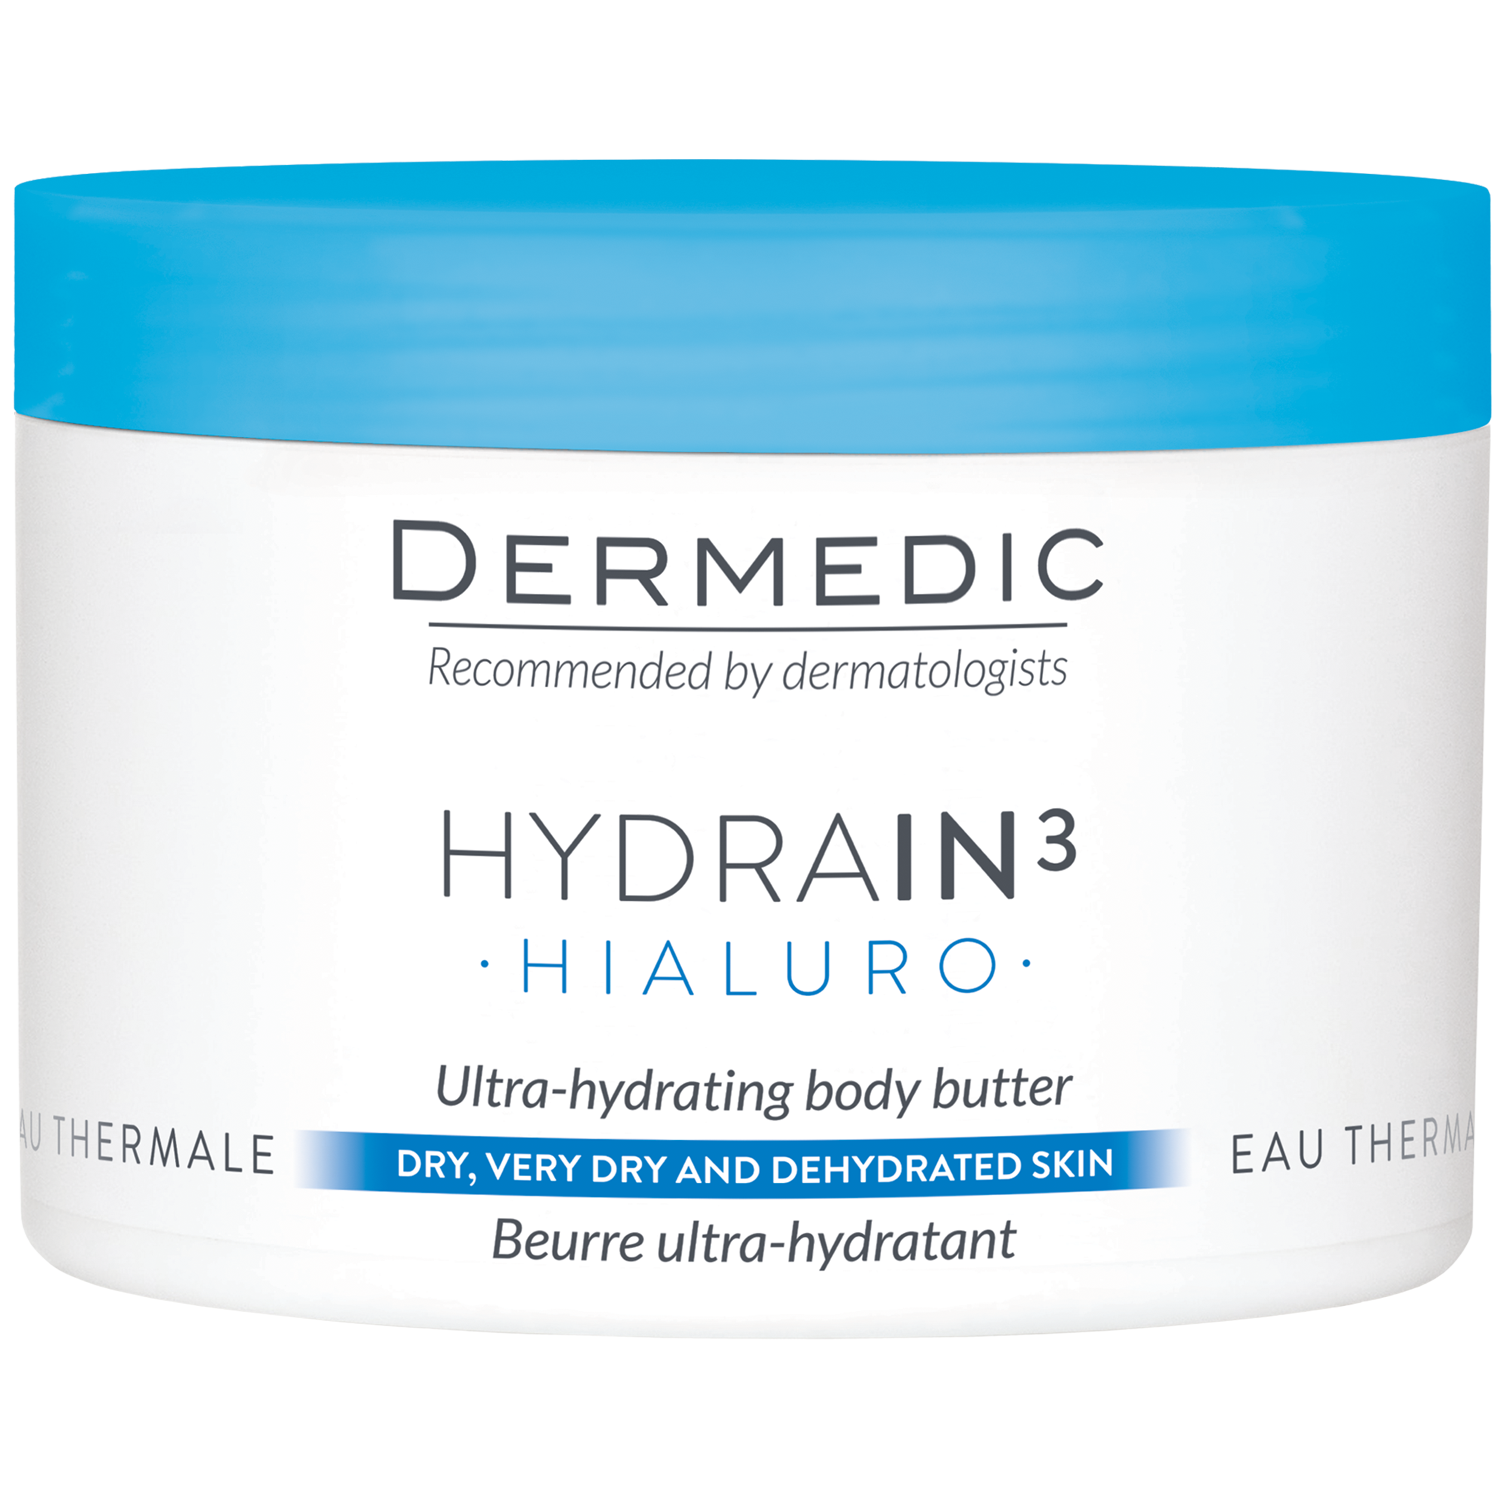 Dermedic Hydrain3 масло для тела, 225 мл dermedic hydrain3 hialuro масло для тела 225 ml